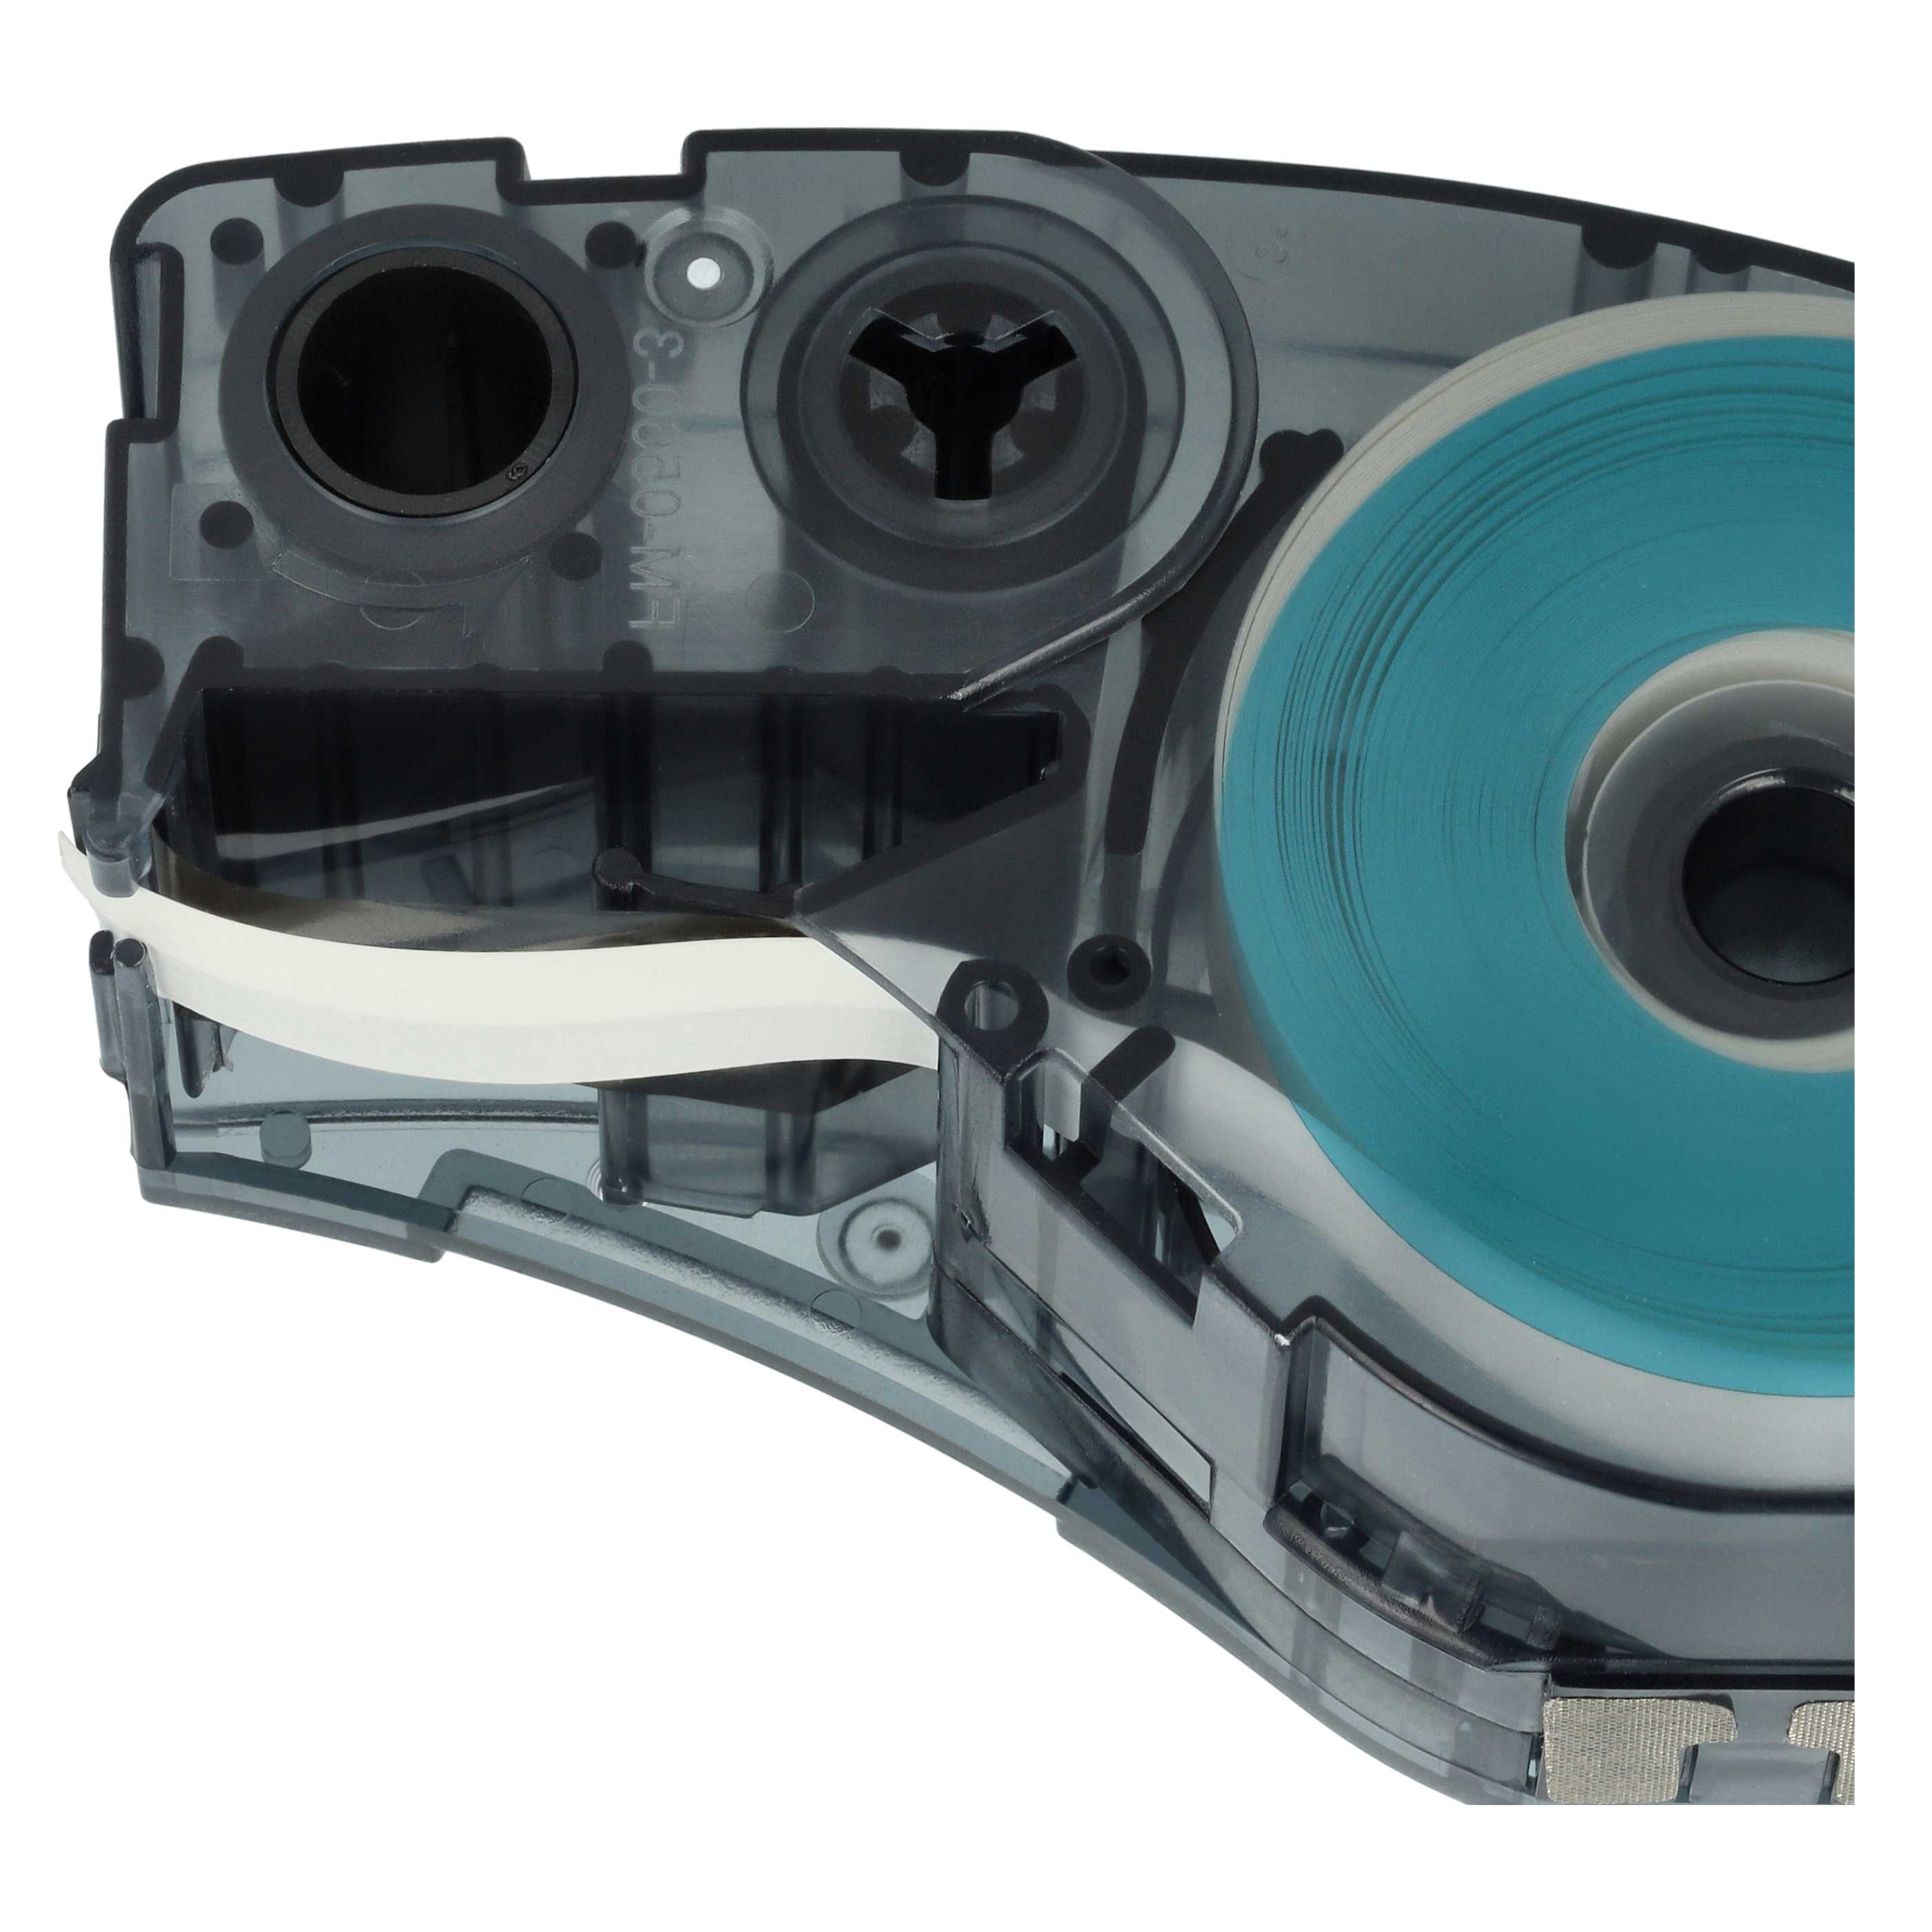 5x Cassetta nastro sostituisce Brady M21-250-423 per etichettatrice Brady 6,35mm nero su bianco, poliestere